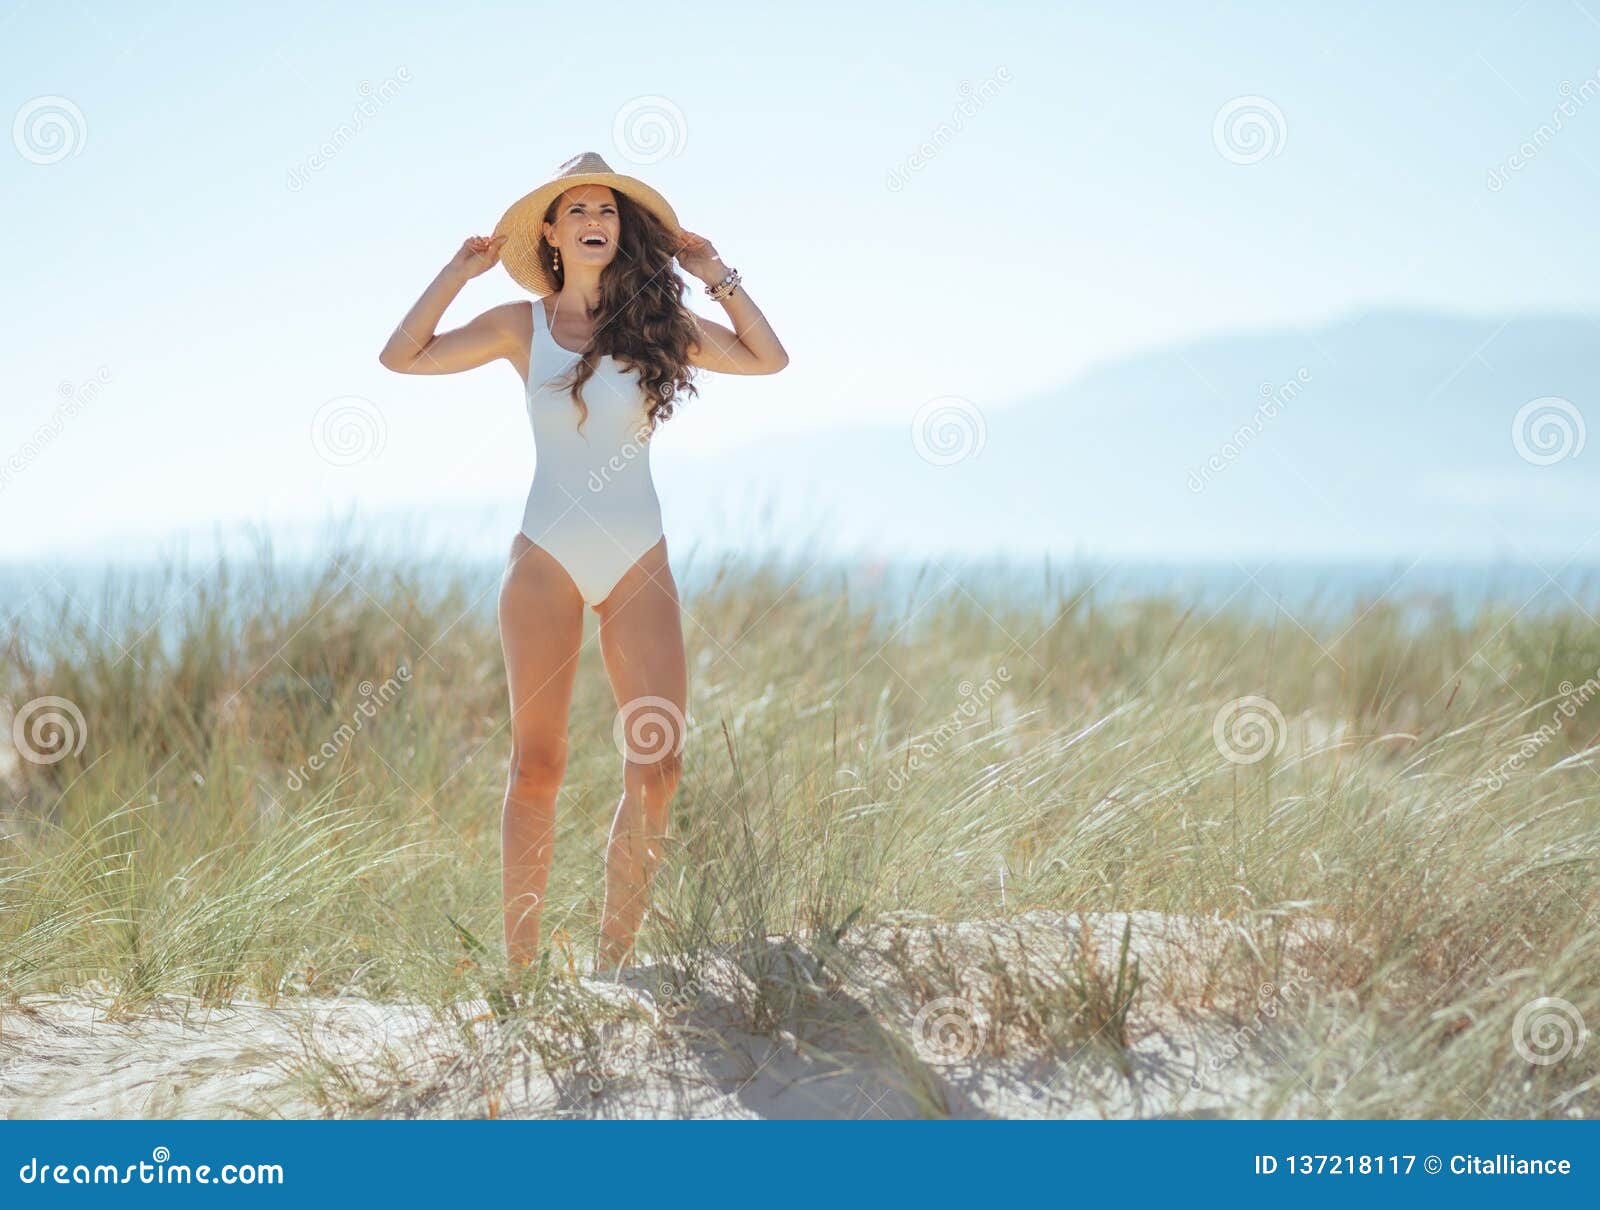 Mujer Moderna Feliz En La Situación Blanca De La Ropa De En La Costa Imagen de archivo - Imagen de vacaciones, verano: 137218117